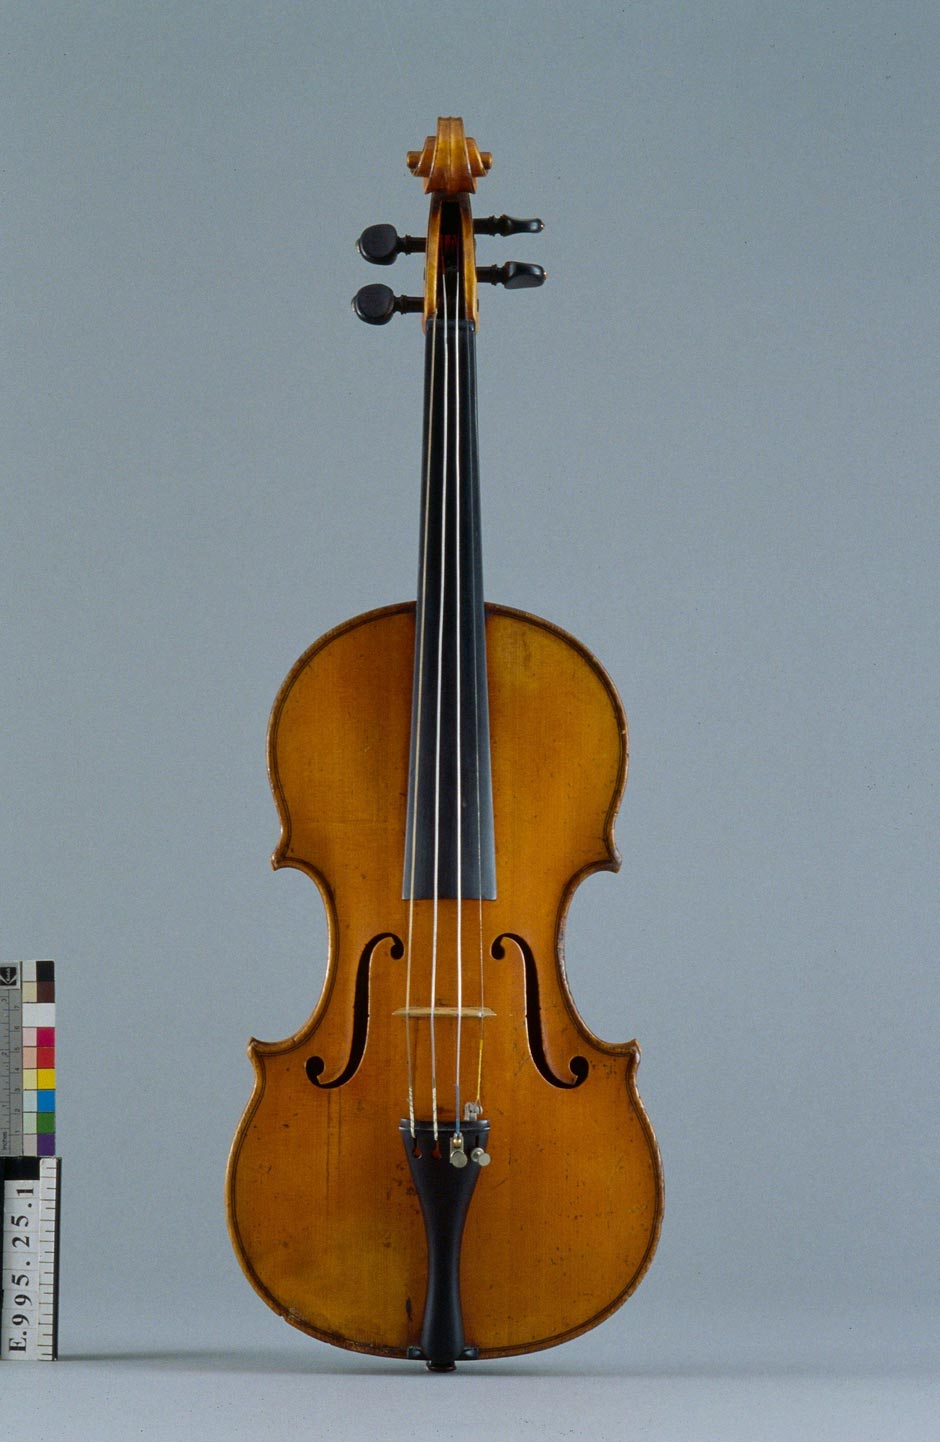 Pierre Hel, Violon EX Grappelli, 1924, Musée de la Musique, Paris, © J.M. Anglès